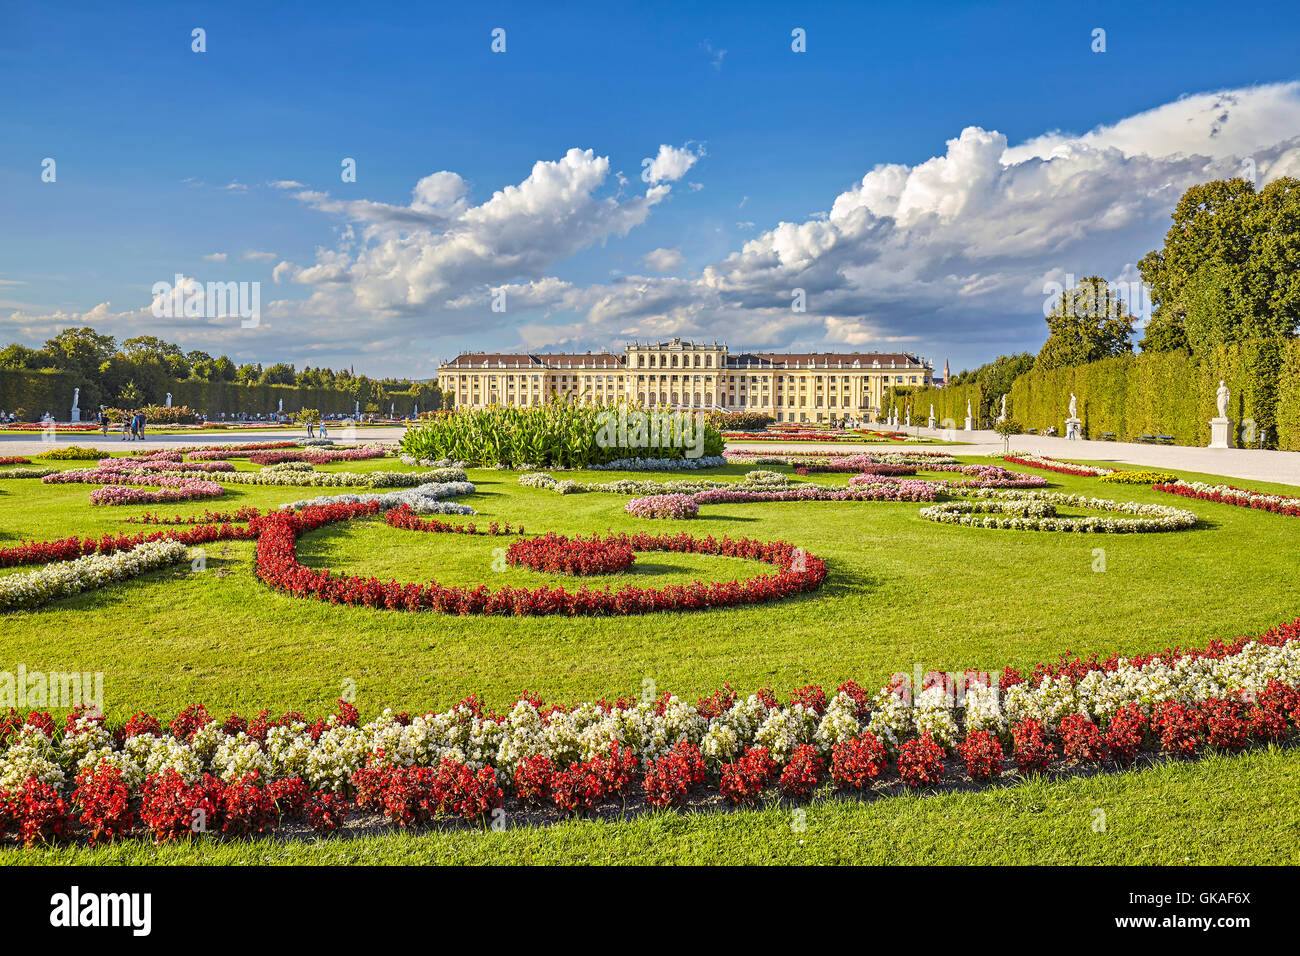 Jardín en el complejo del palacio de Schonbrunn. Foto de stock